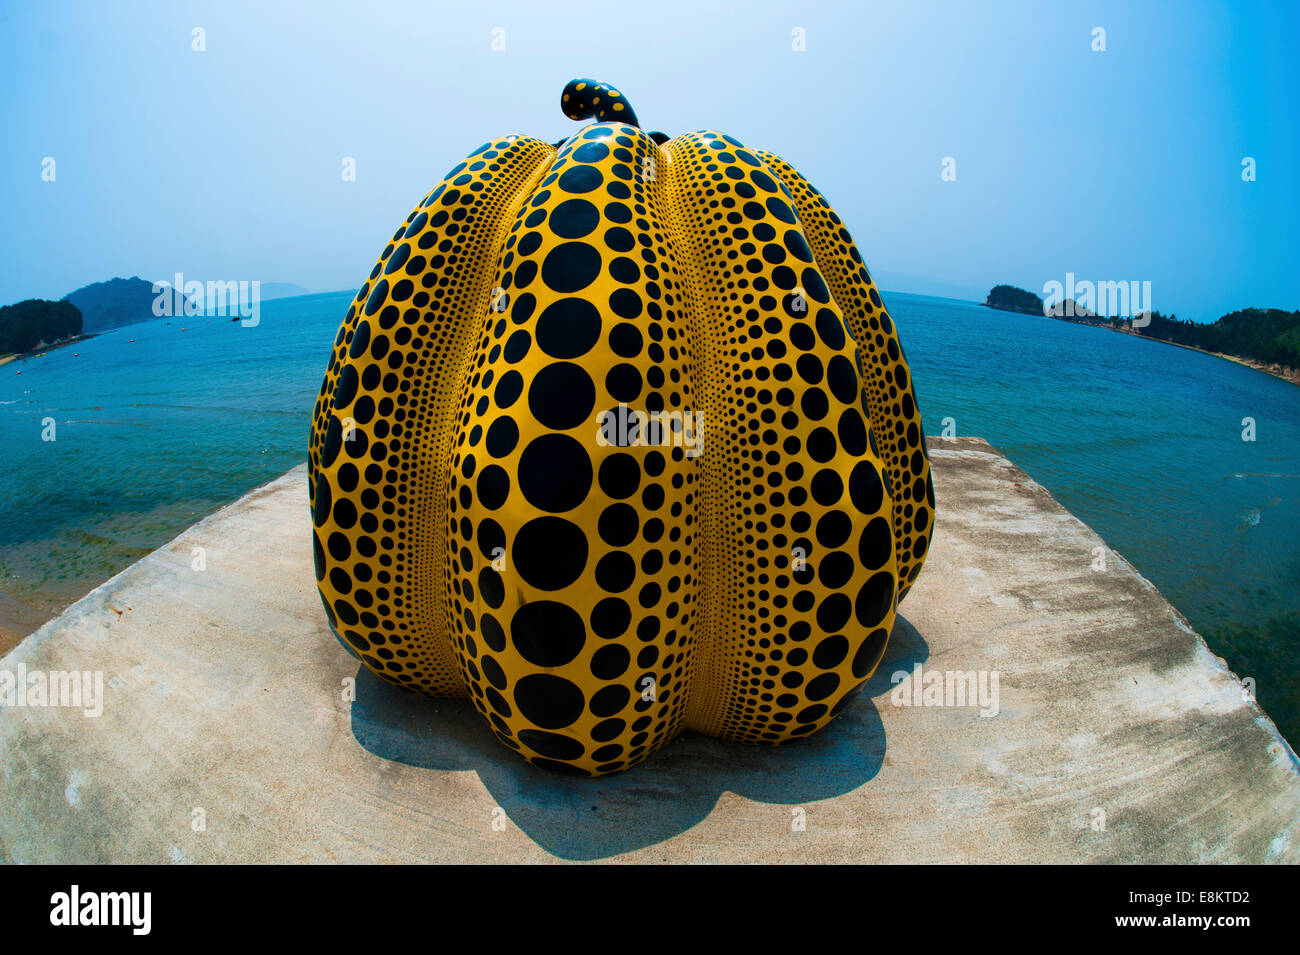 “Pumpkin” Art by Yayoi Kusama, Naoshima Island, Japan. Stock Photo